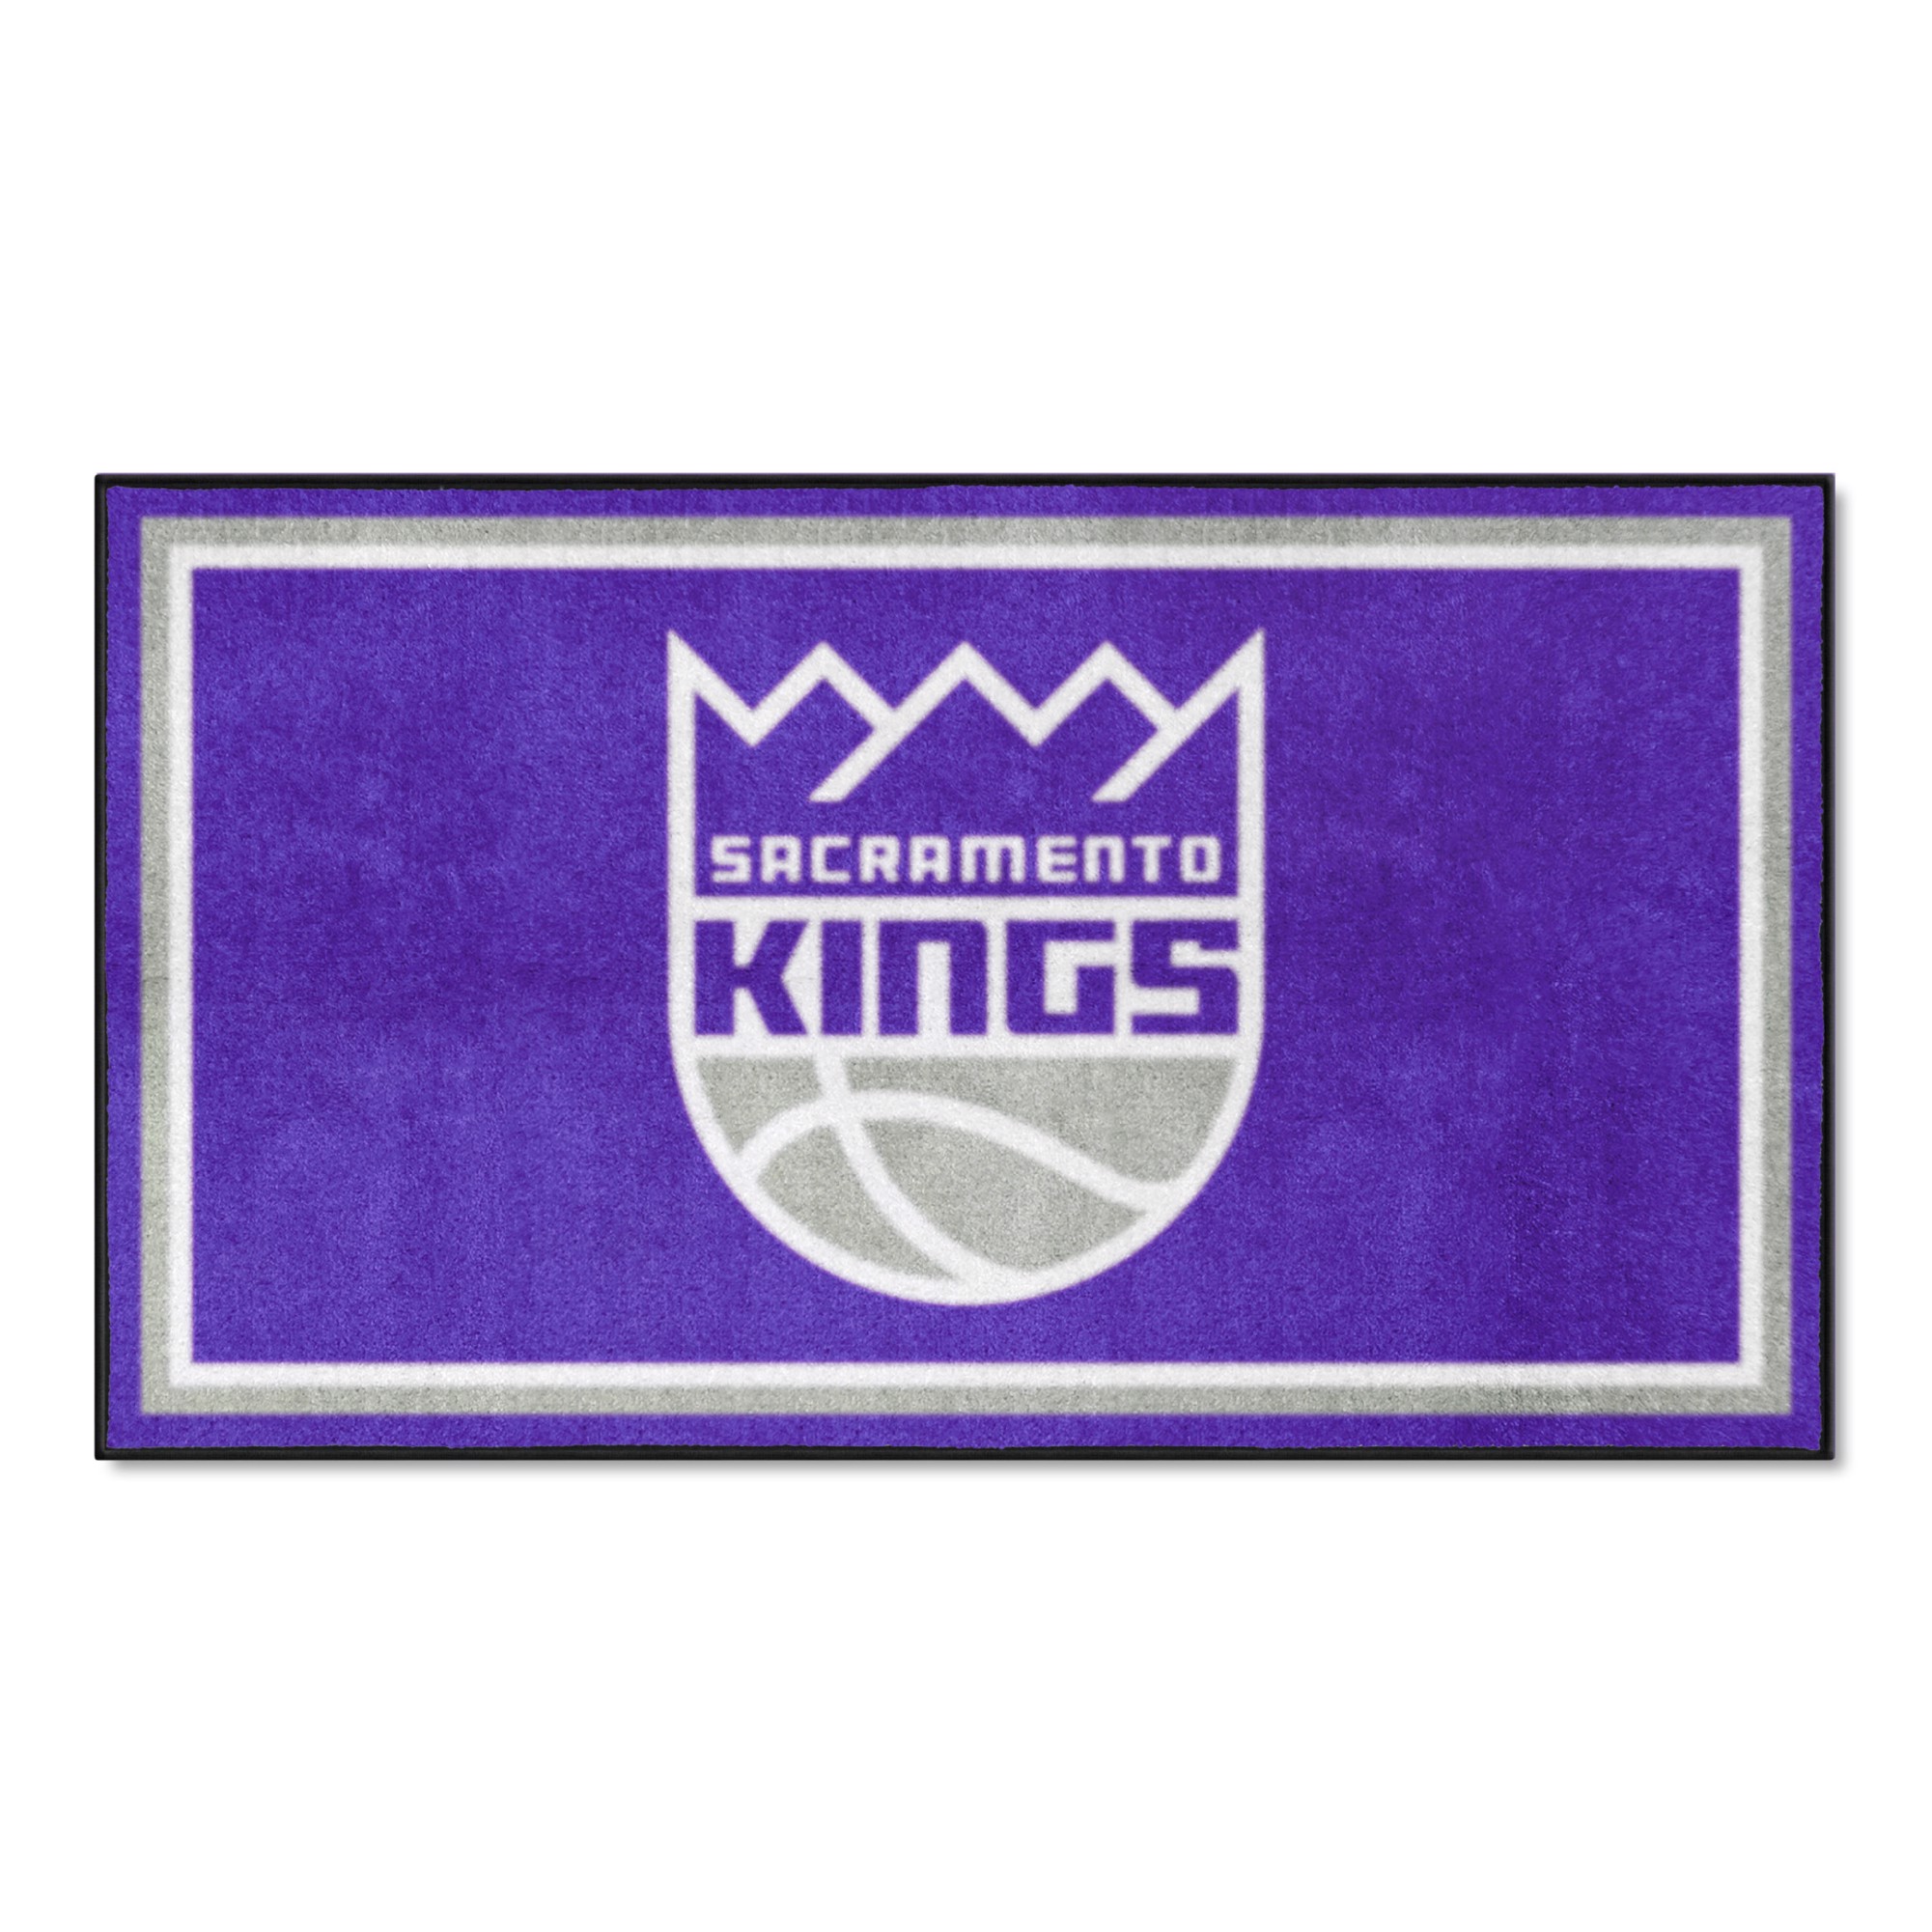 Sacramento kings font